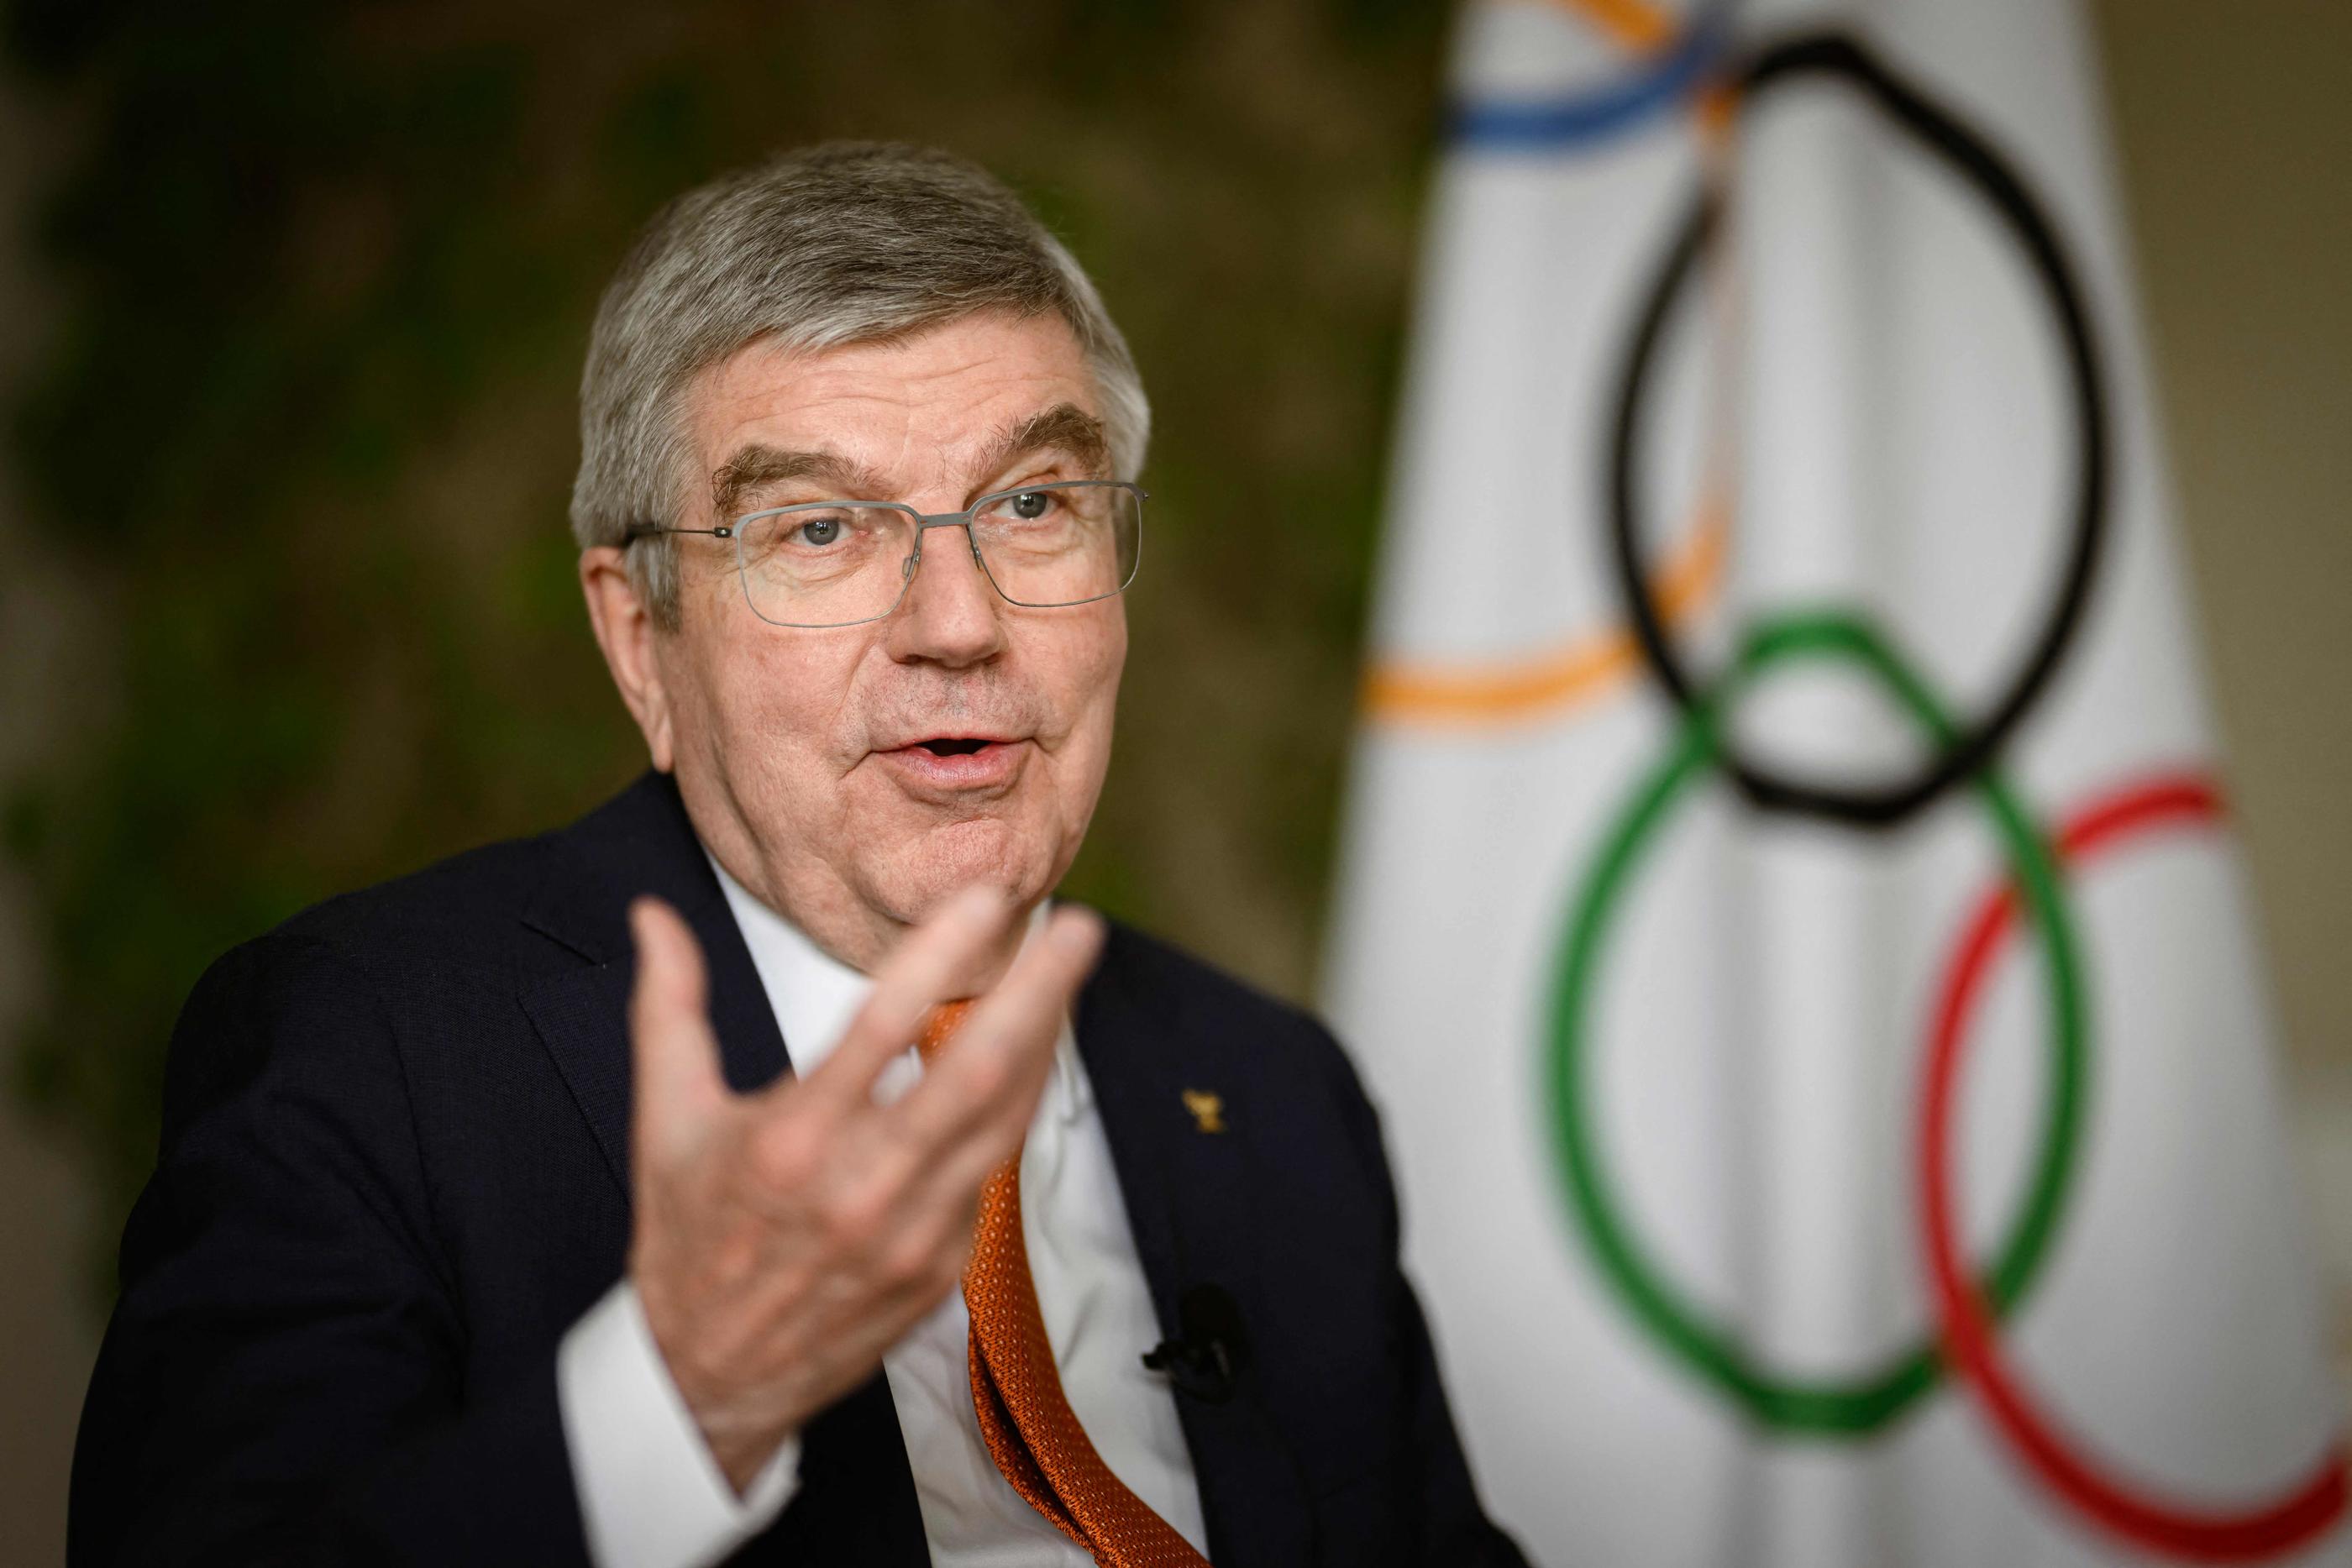 Le président du CIO Thomas Bach est revenu sur la présence d’athlètes palestiniens lors des JO de Paris et a déclaré que le Comité les invitera s’ils ne parviennent pas à se qualifier. AFP/GABRIEL MONNET